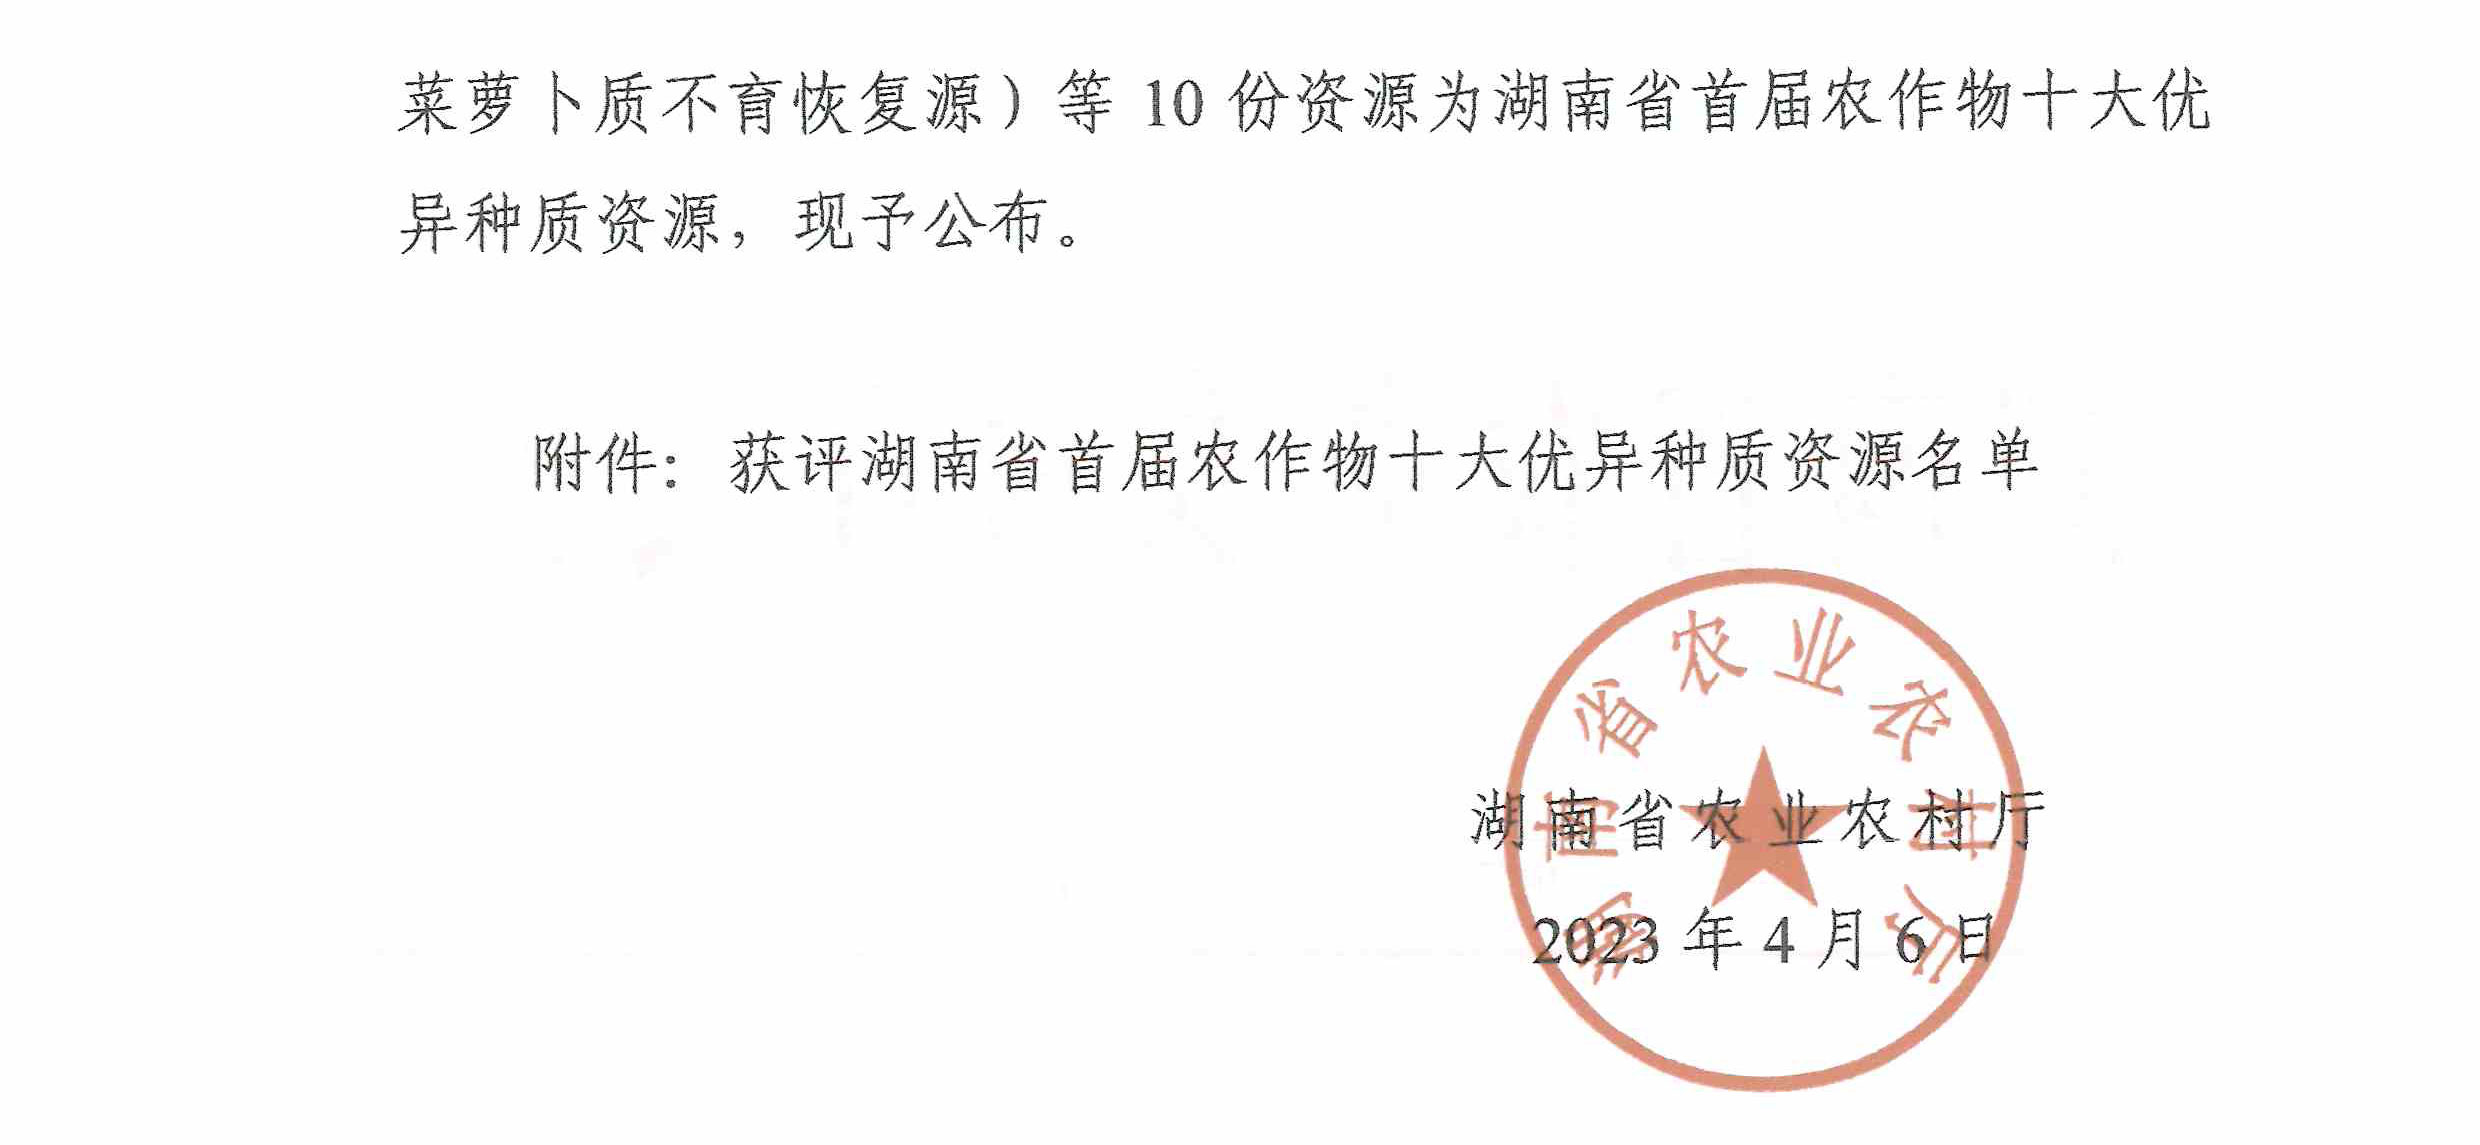 关于公布湖南省首届农作物十大优异种质资源评选结果的通知-2.jpg